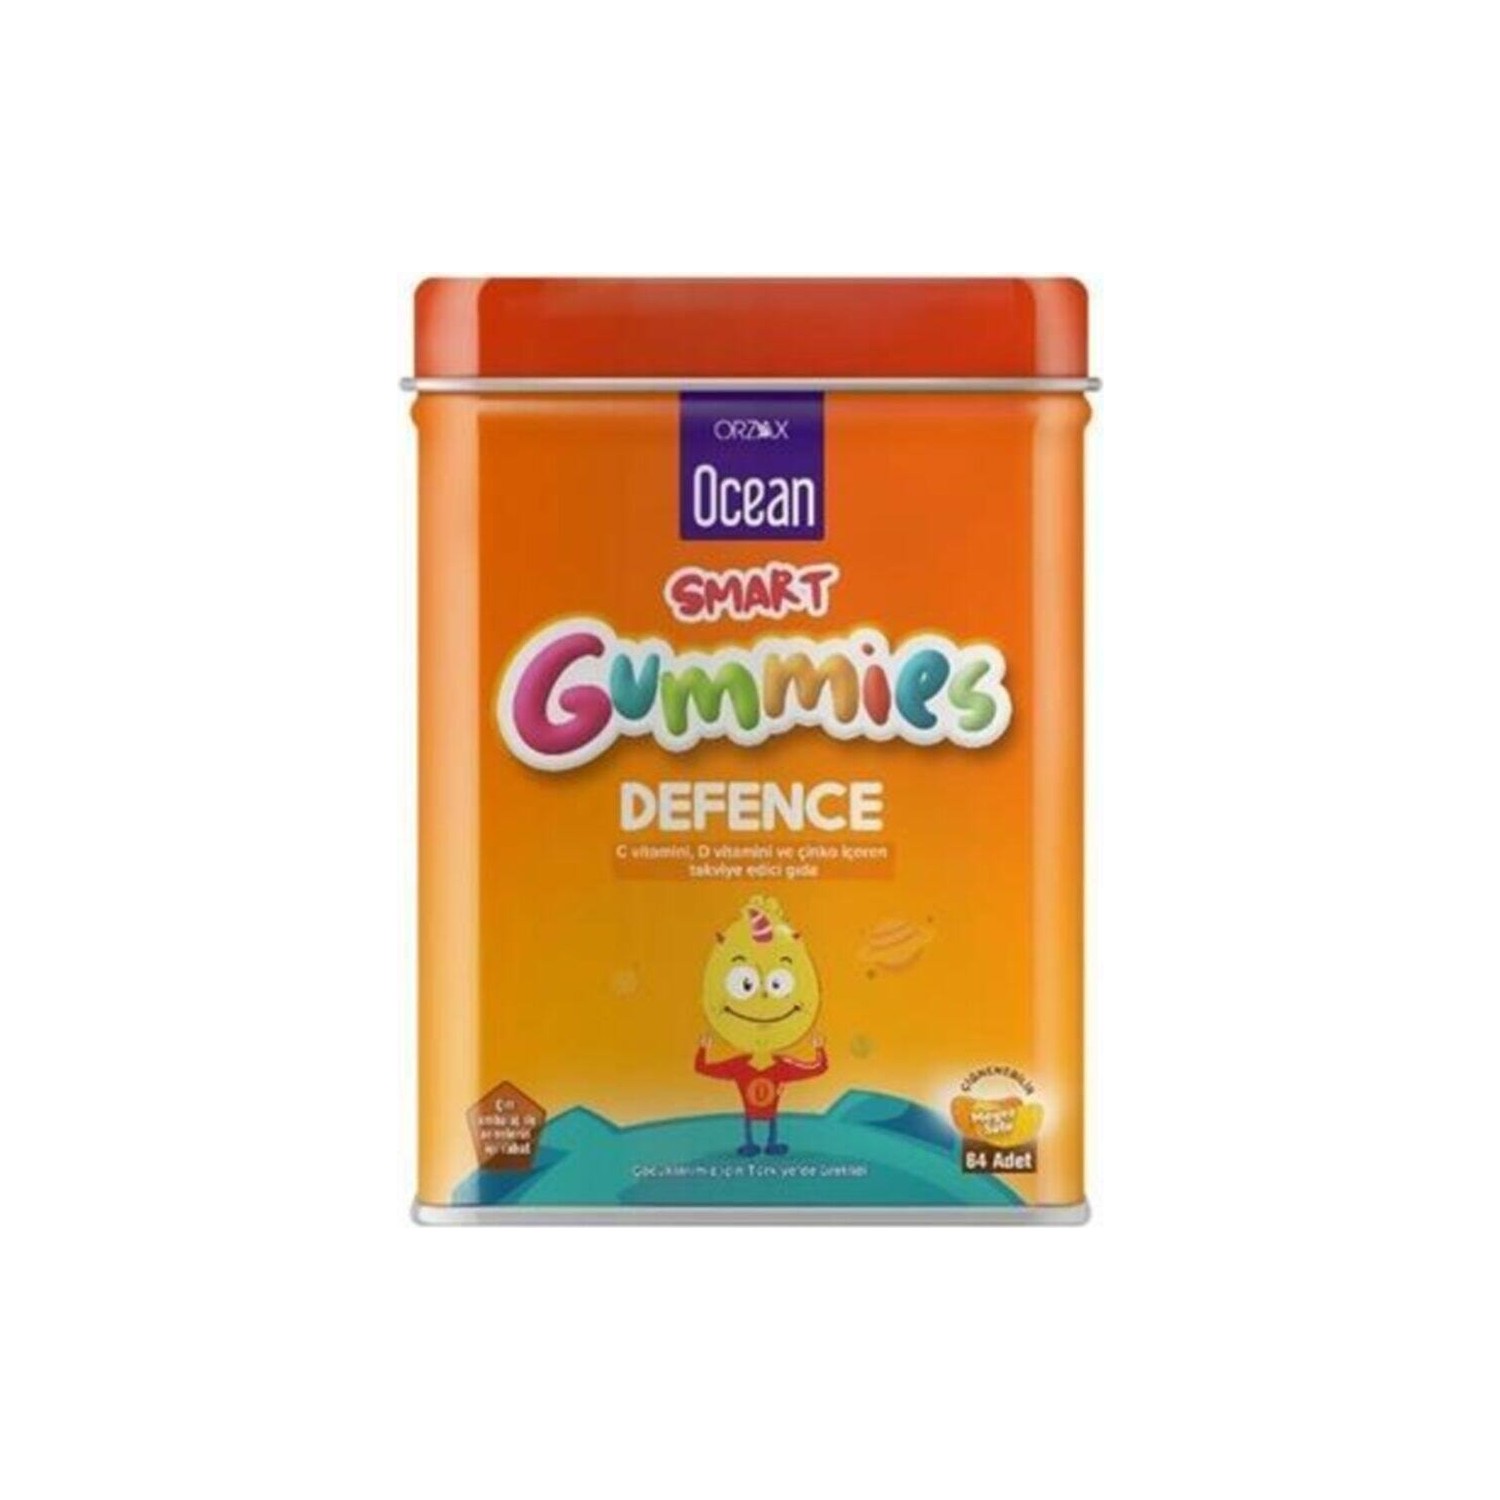 цена Поливитамины Ocean Smart Gummies Defense, 3 упаковки по 64 штуки